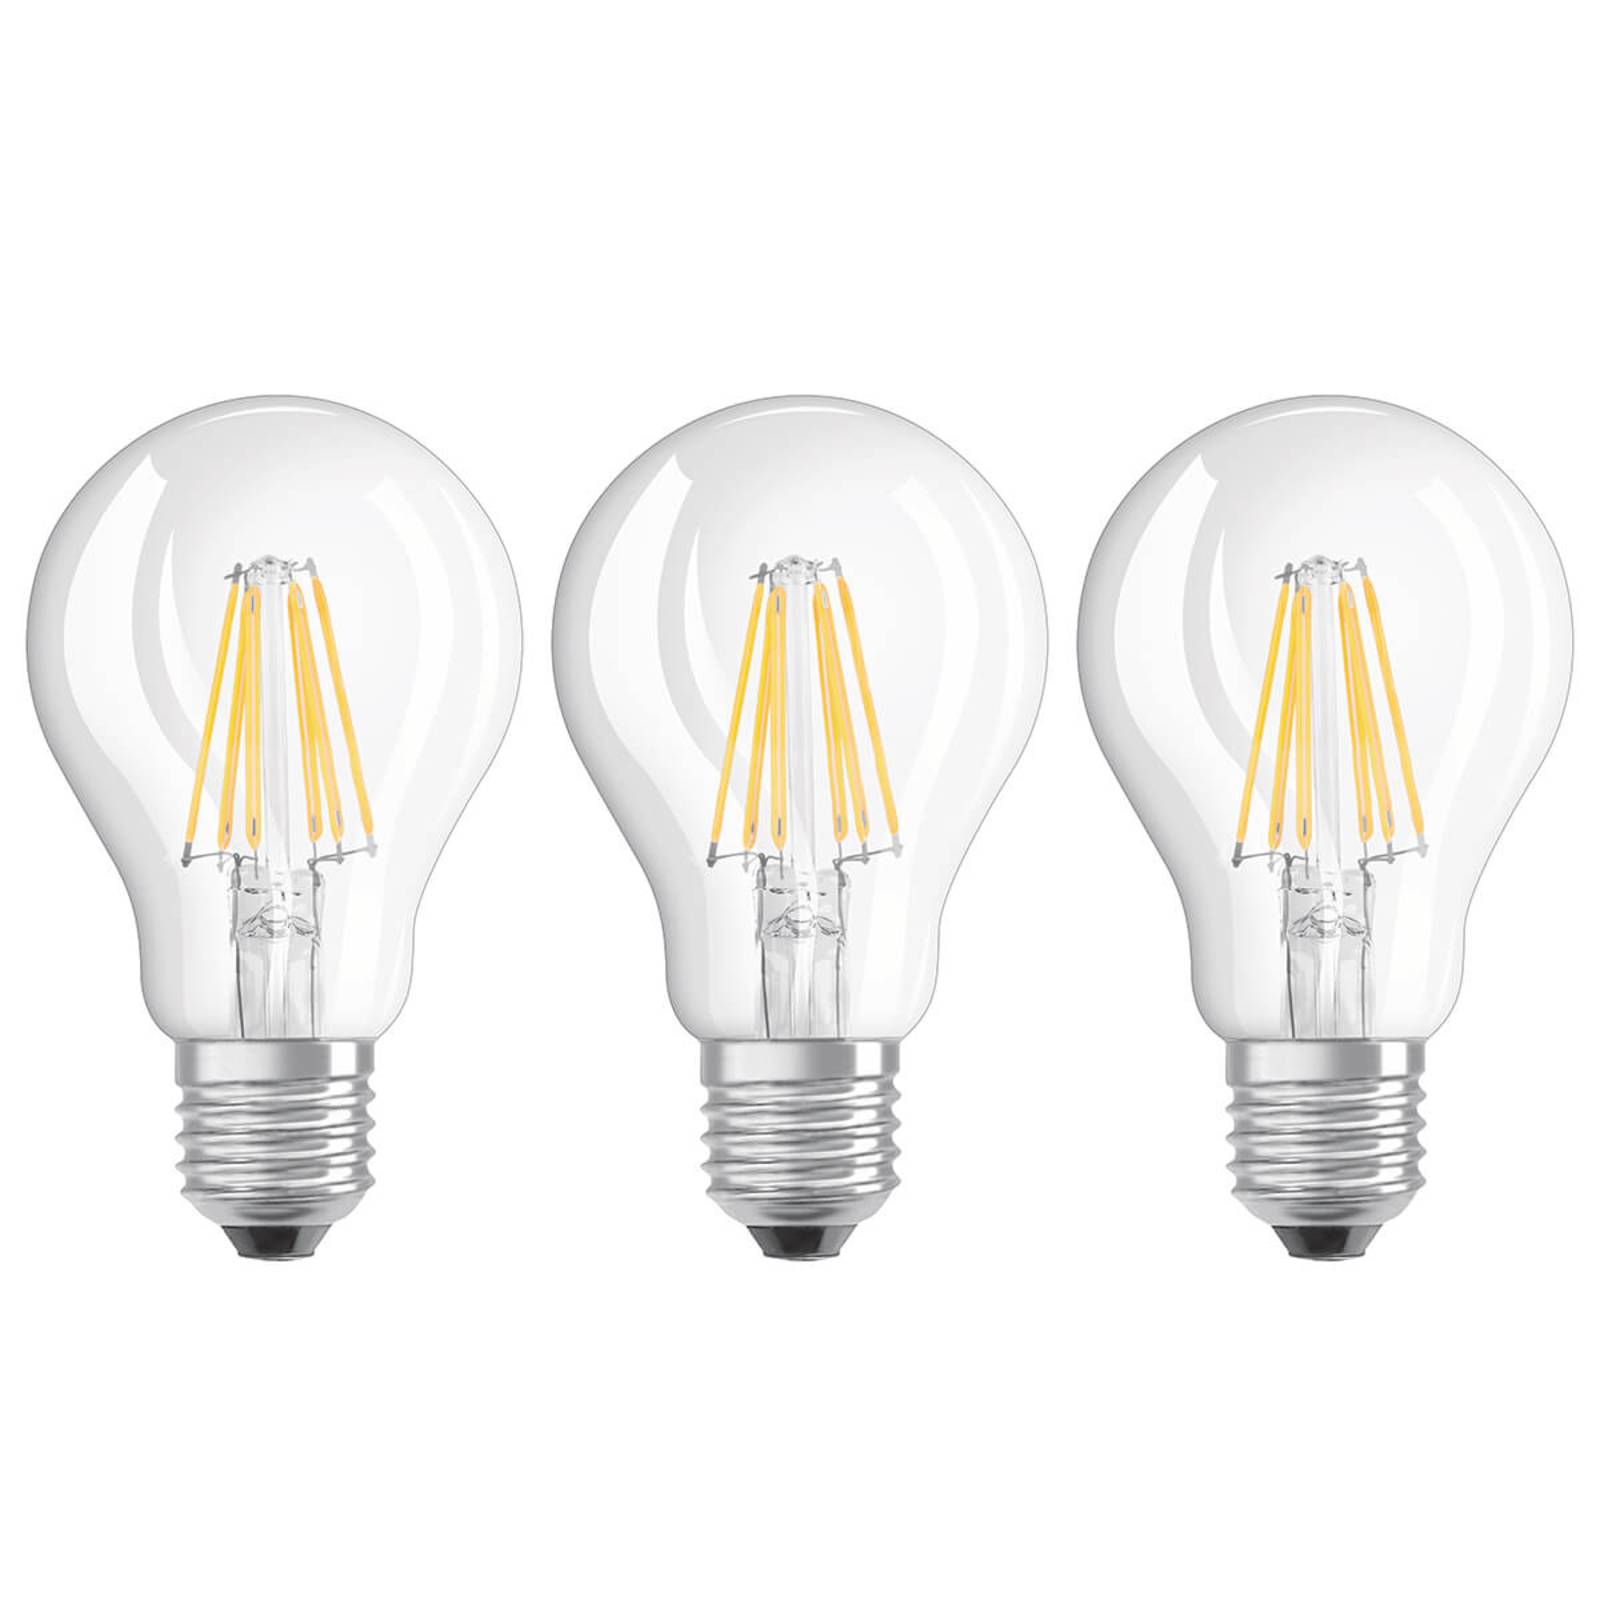 Image of Ampoule filament LED E27 6 W blanc chaud, kit de 3 4058075819290